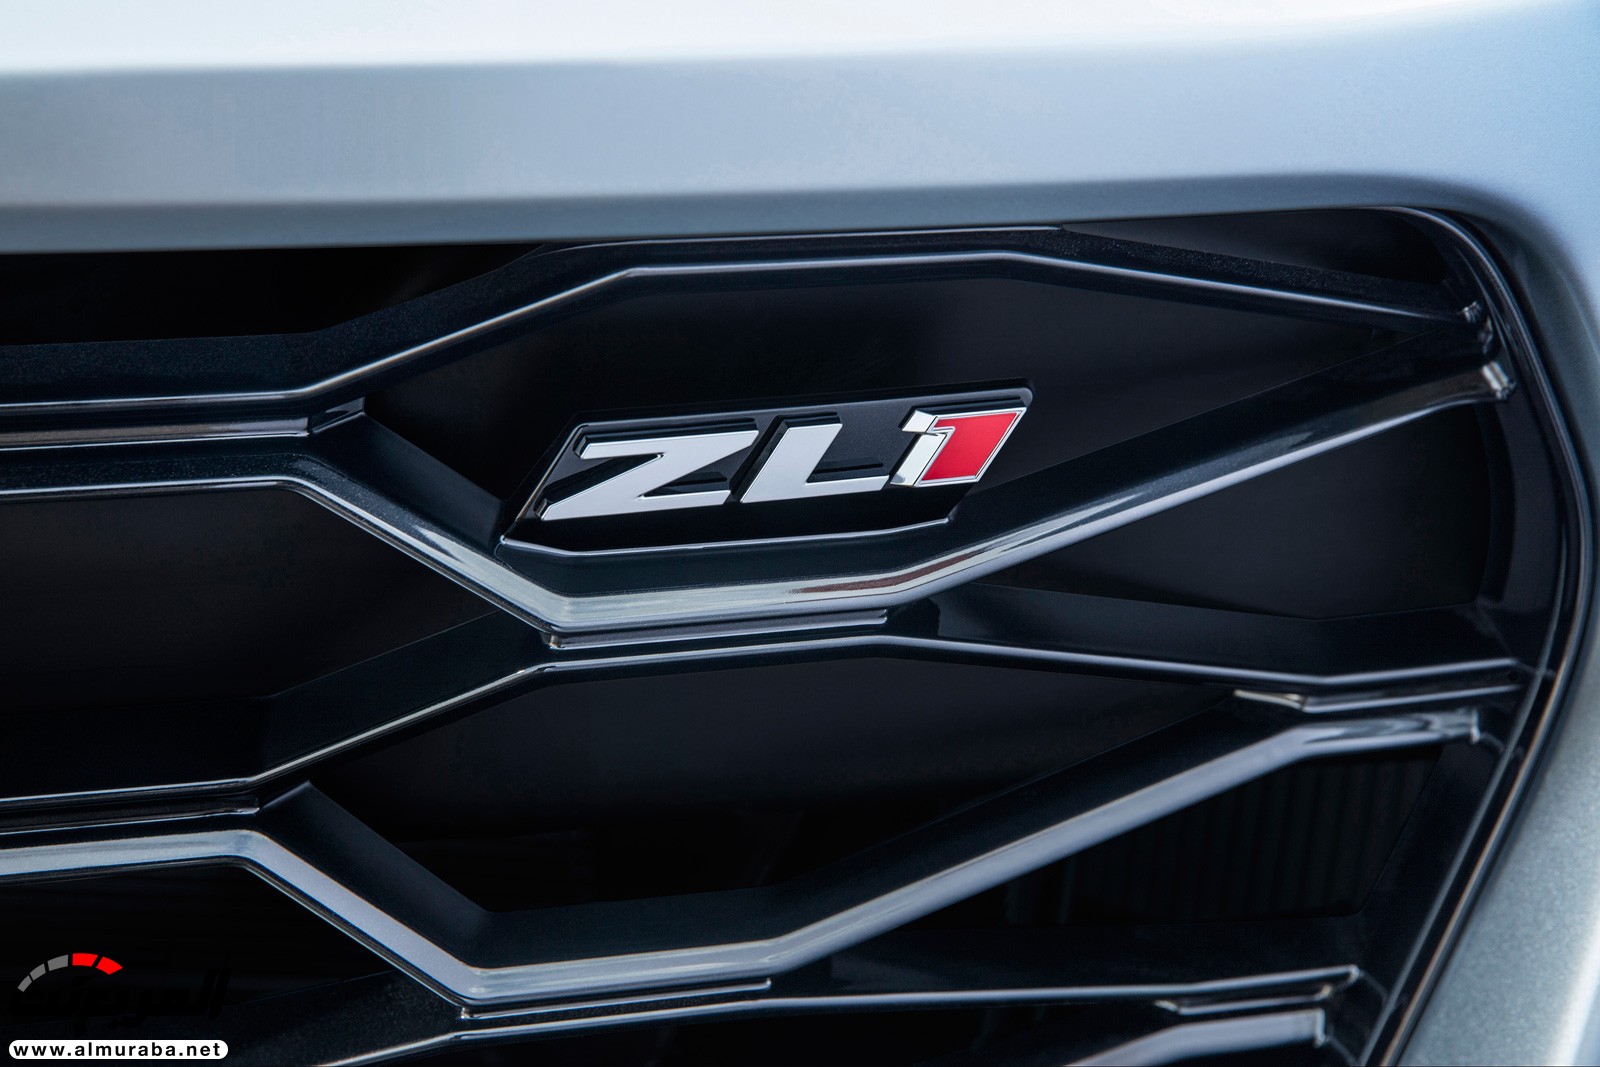 "شيفروليه" تؤكد أن الكمارو ZL1 هي سيارتها العضلية الأسرع على الإطلاق Chevrolet Camaro ZL1 10